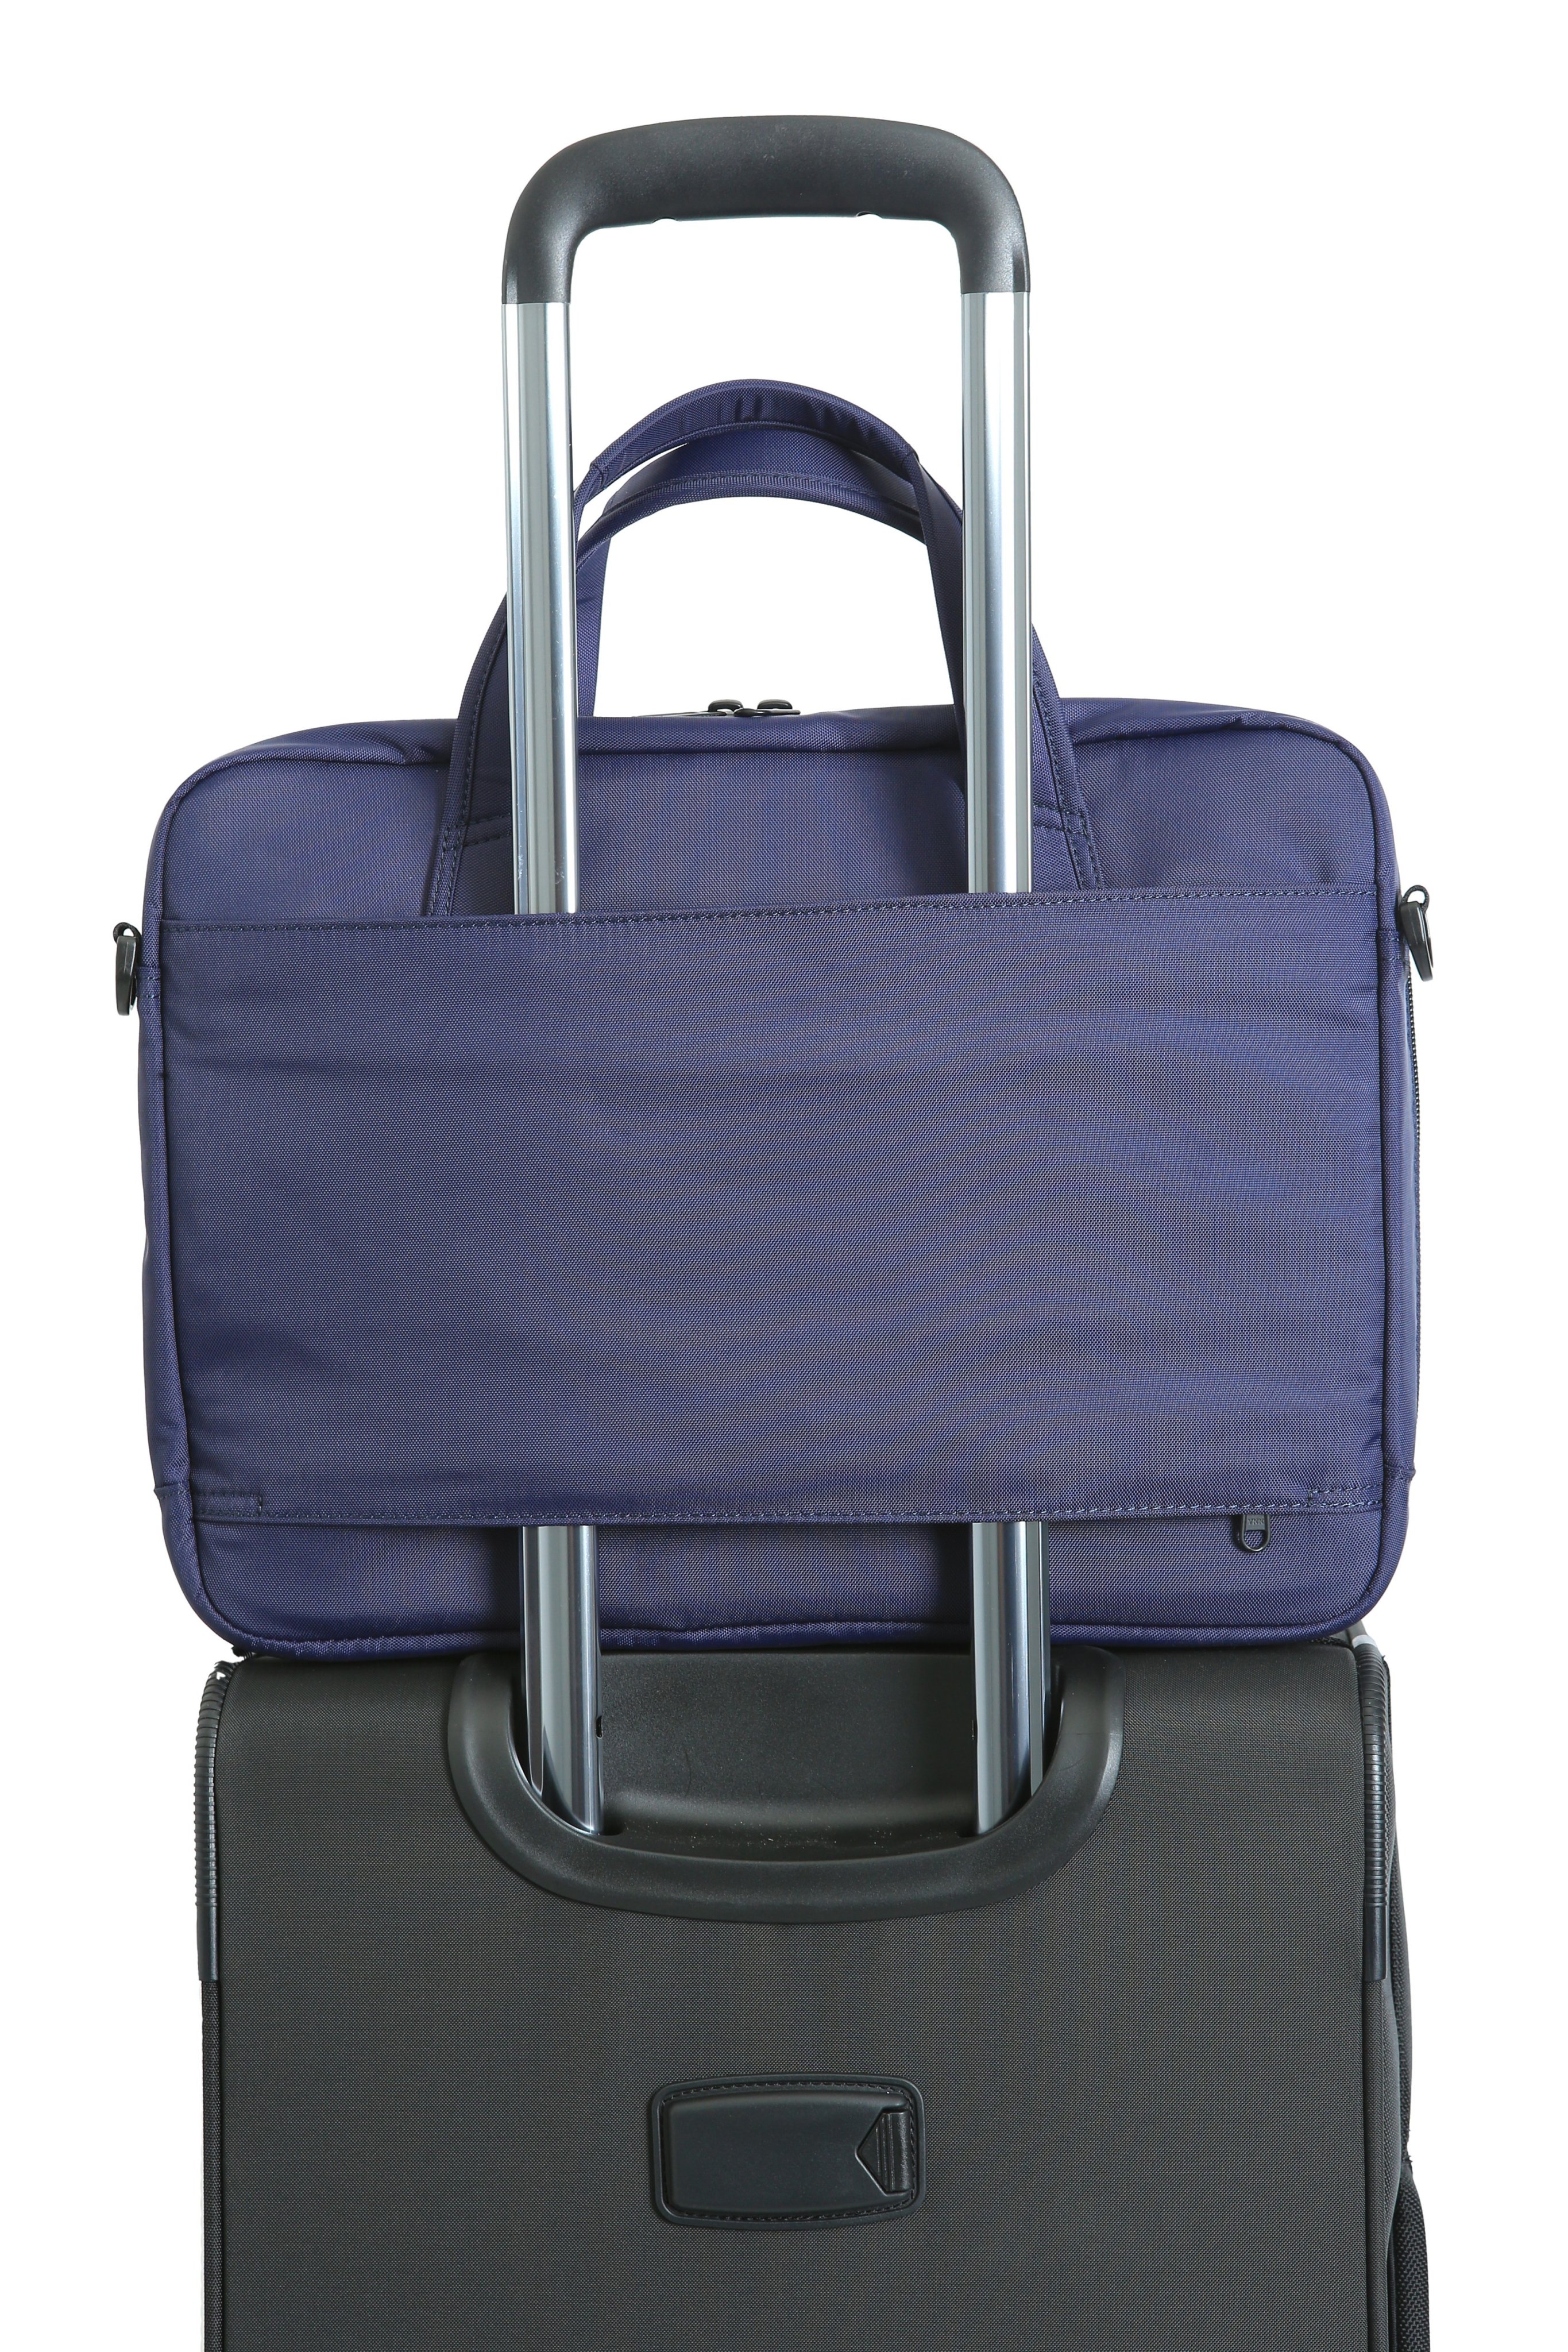 Bộ sản phẩm vali và túi - Vali Balo Túi Xách LUGBRO - Công Ty TNHH LUGBRO